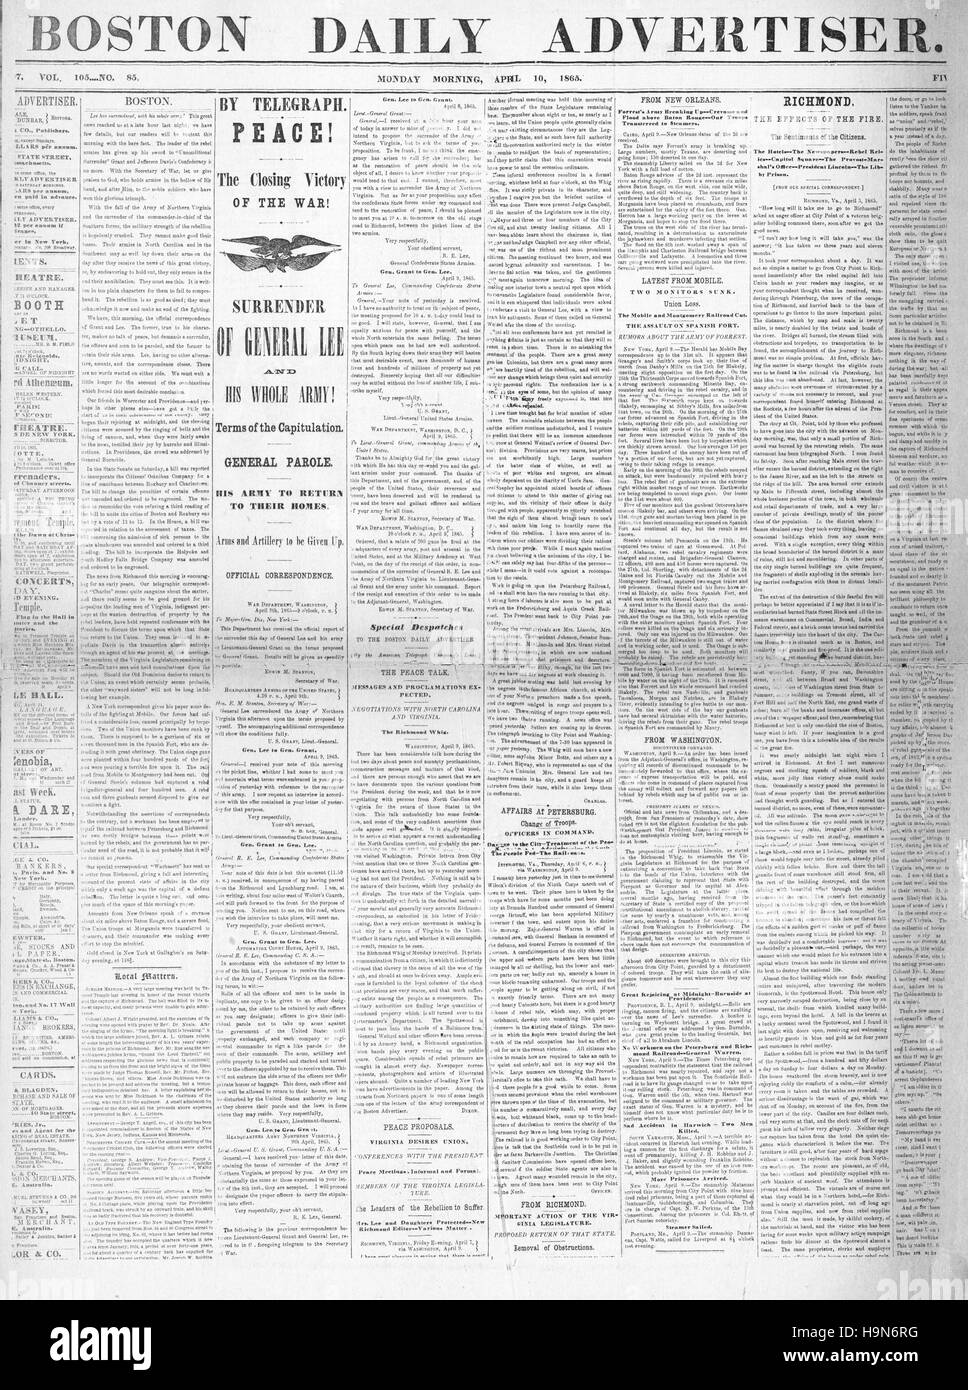 1865 Boston Daily Advertiser front page reddition du général Lee met fin à la guerre civile américaine Banque D'Images